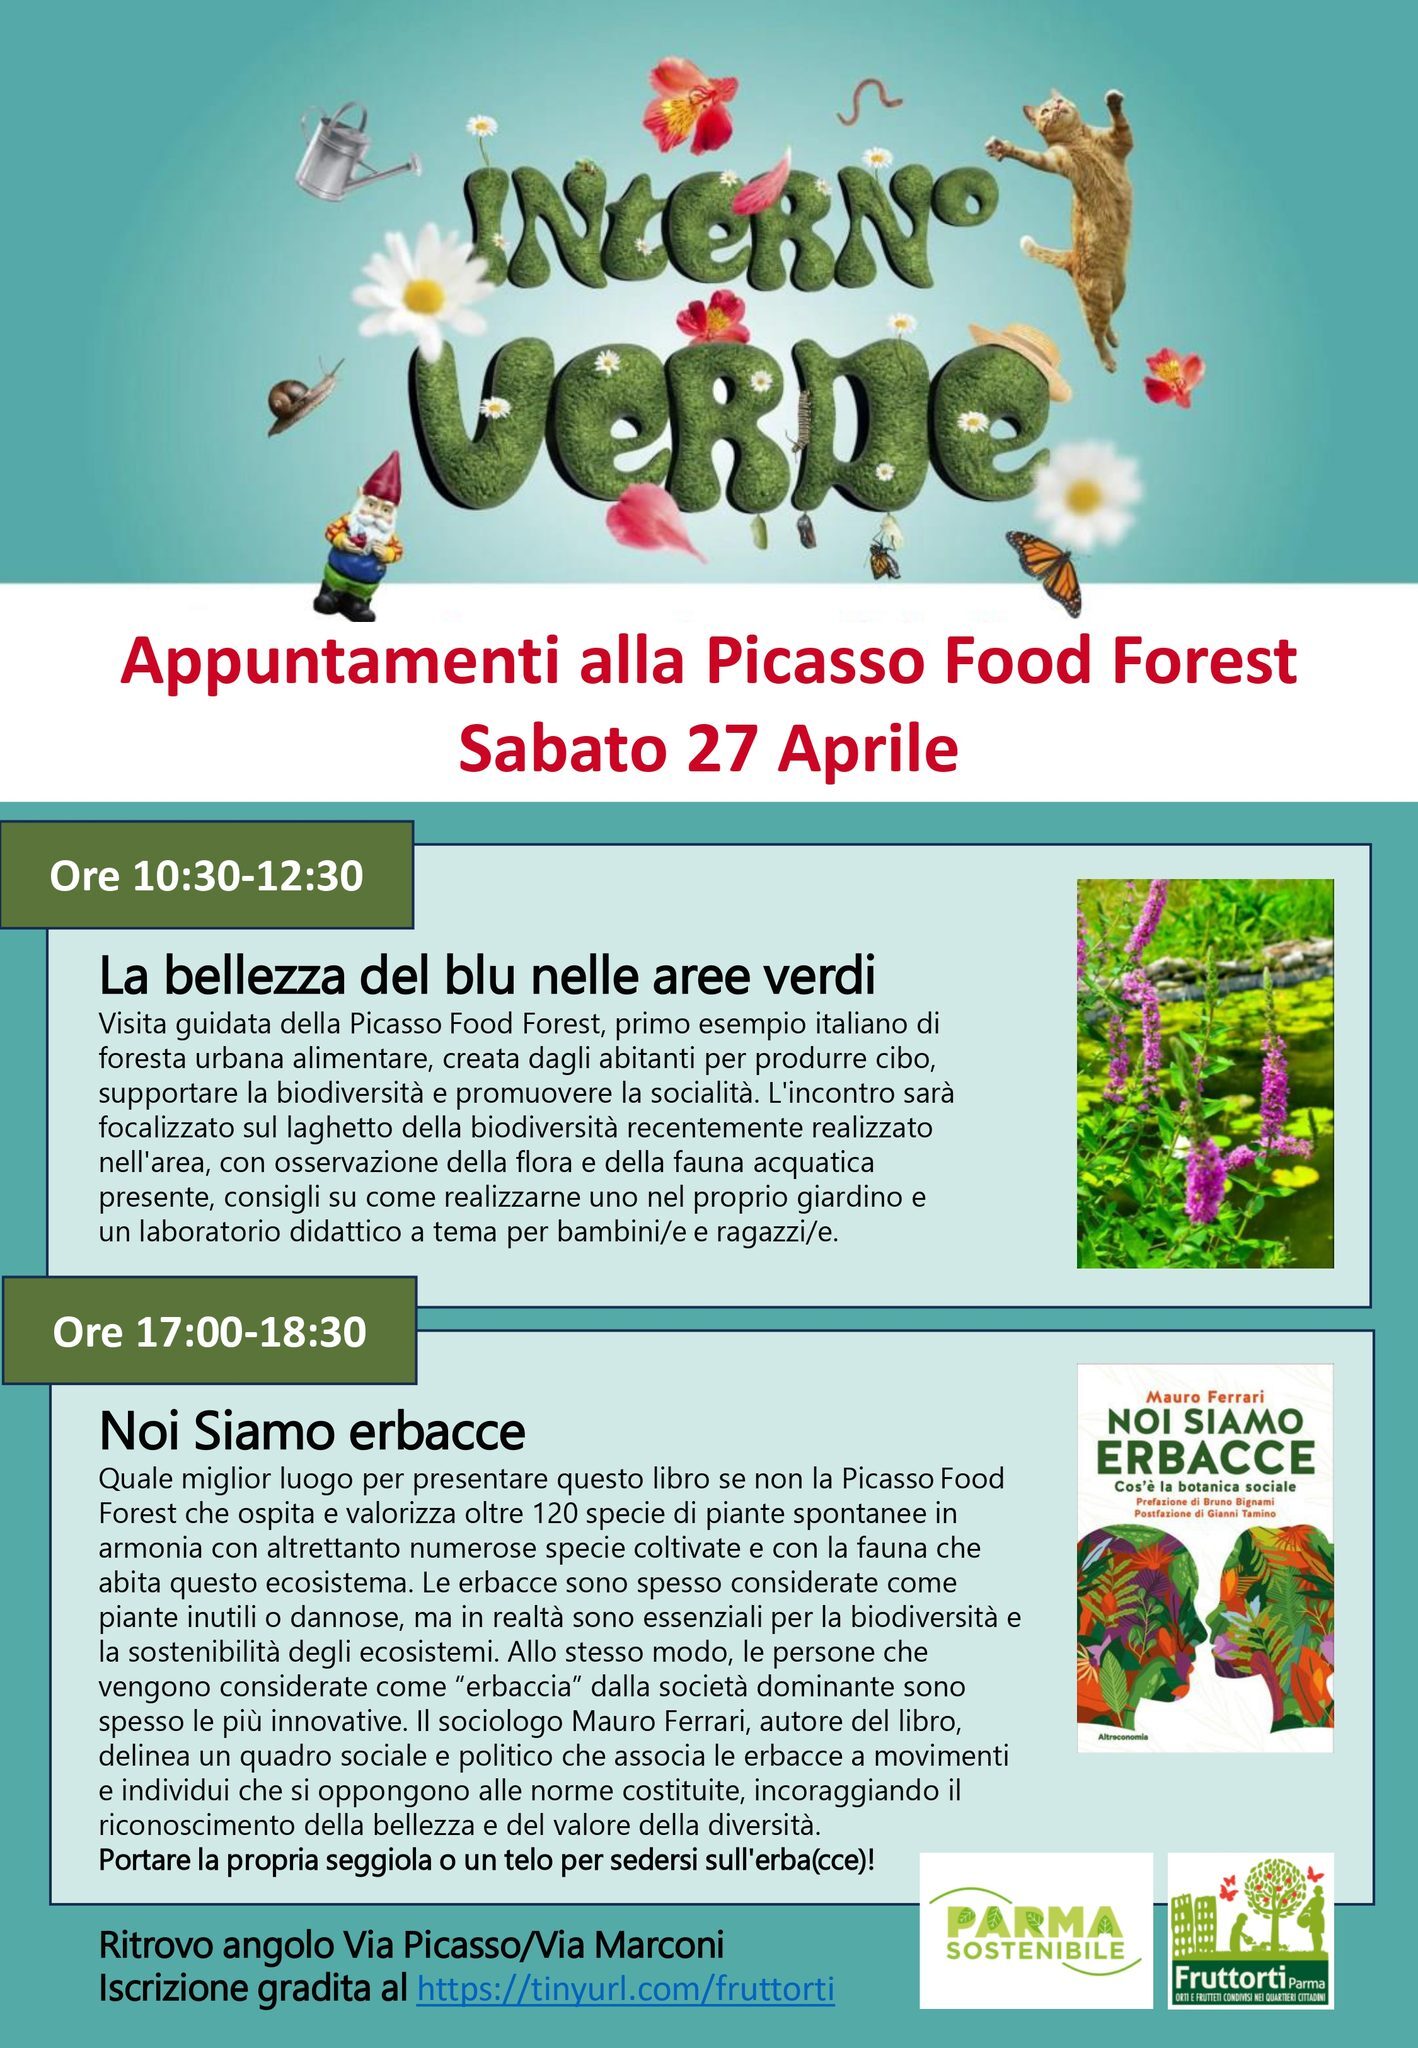 Interno verde a Parma: gli eventi della Picasso Forest